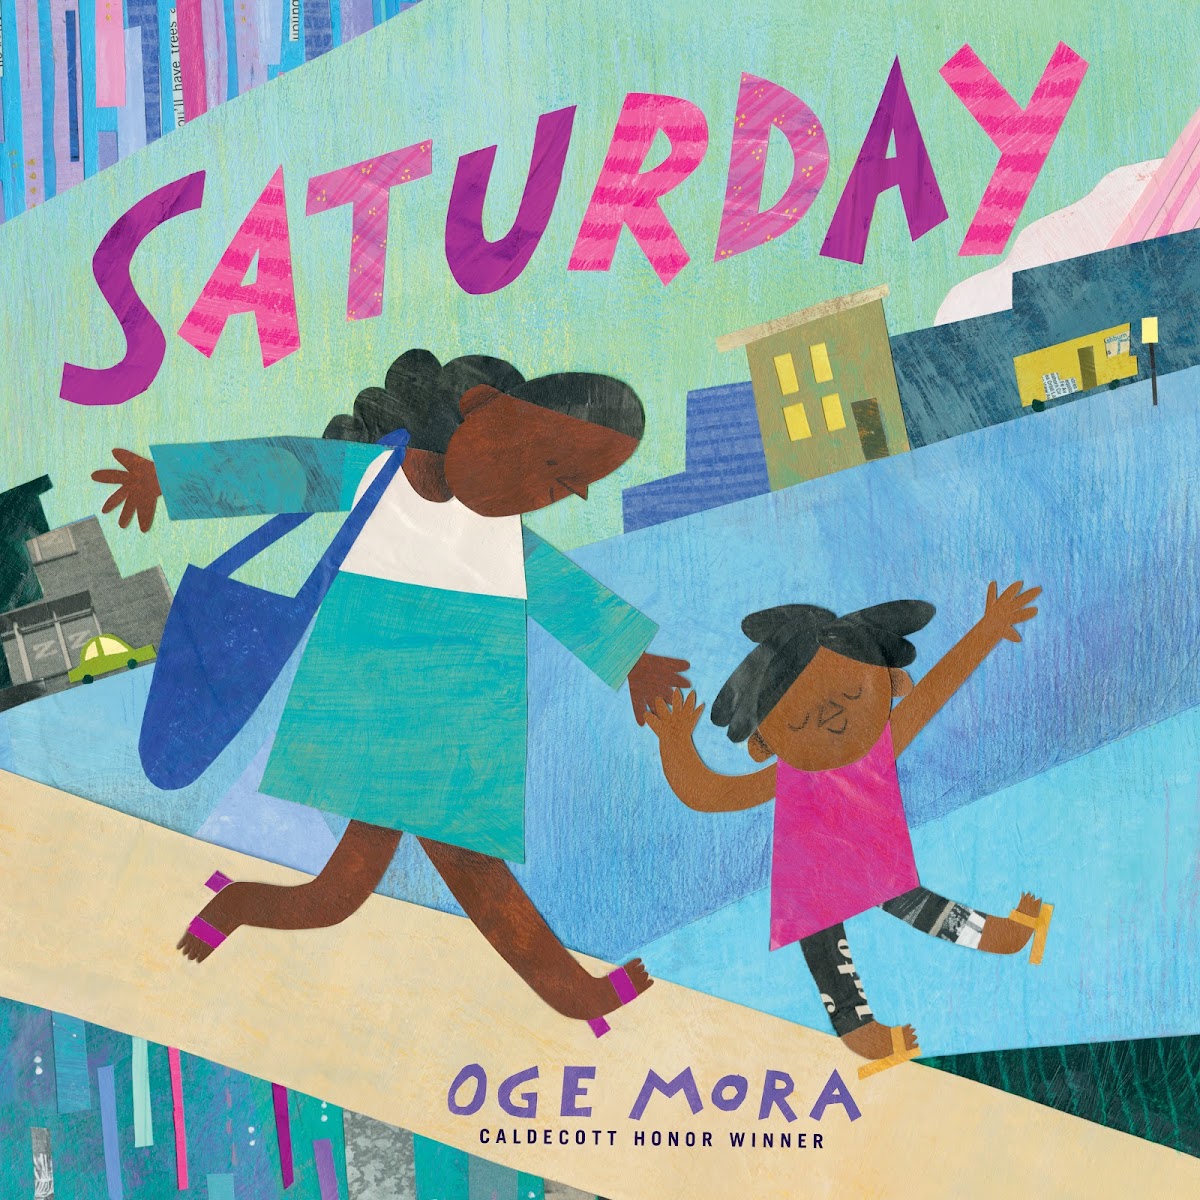 Saturday book cover by Oge Mora 16 IL